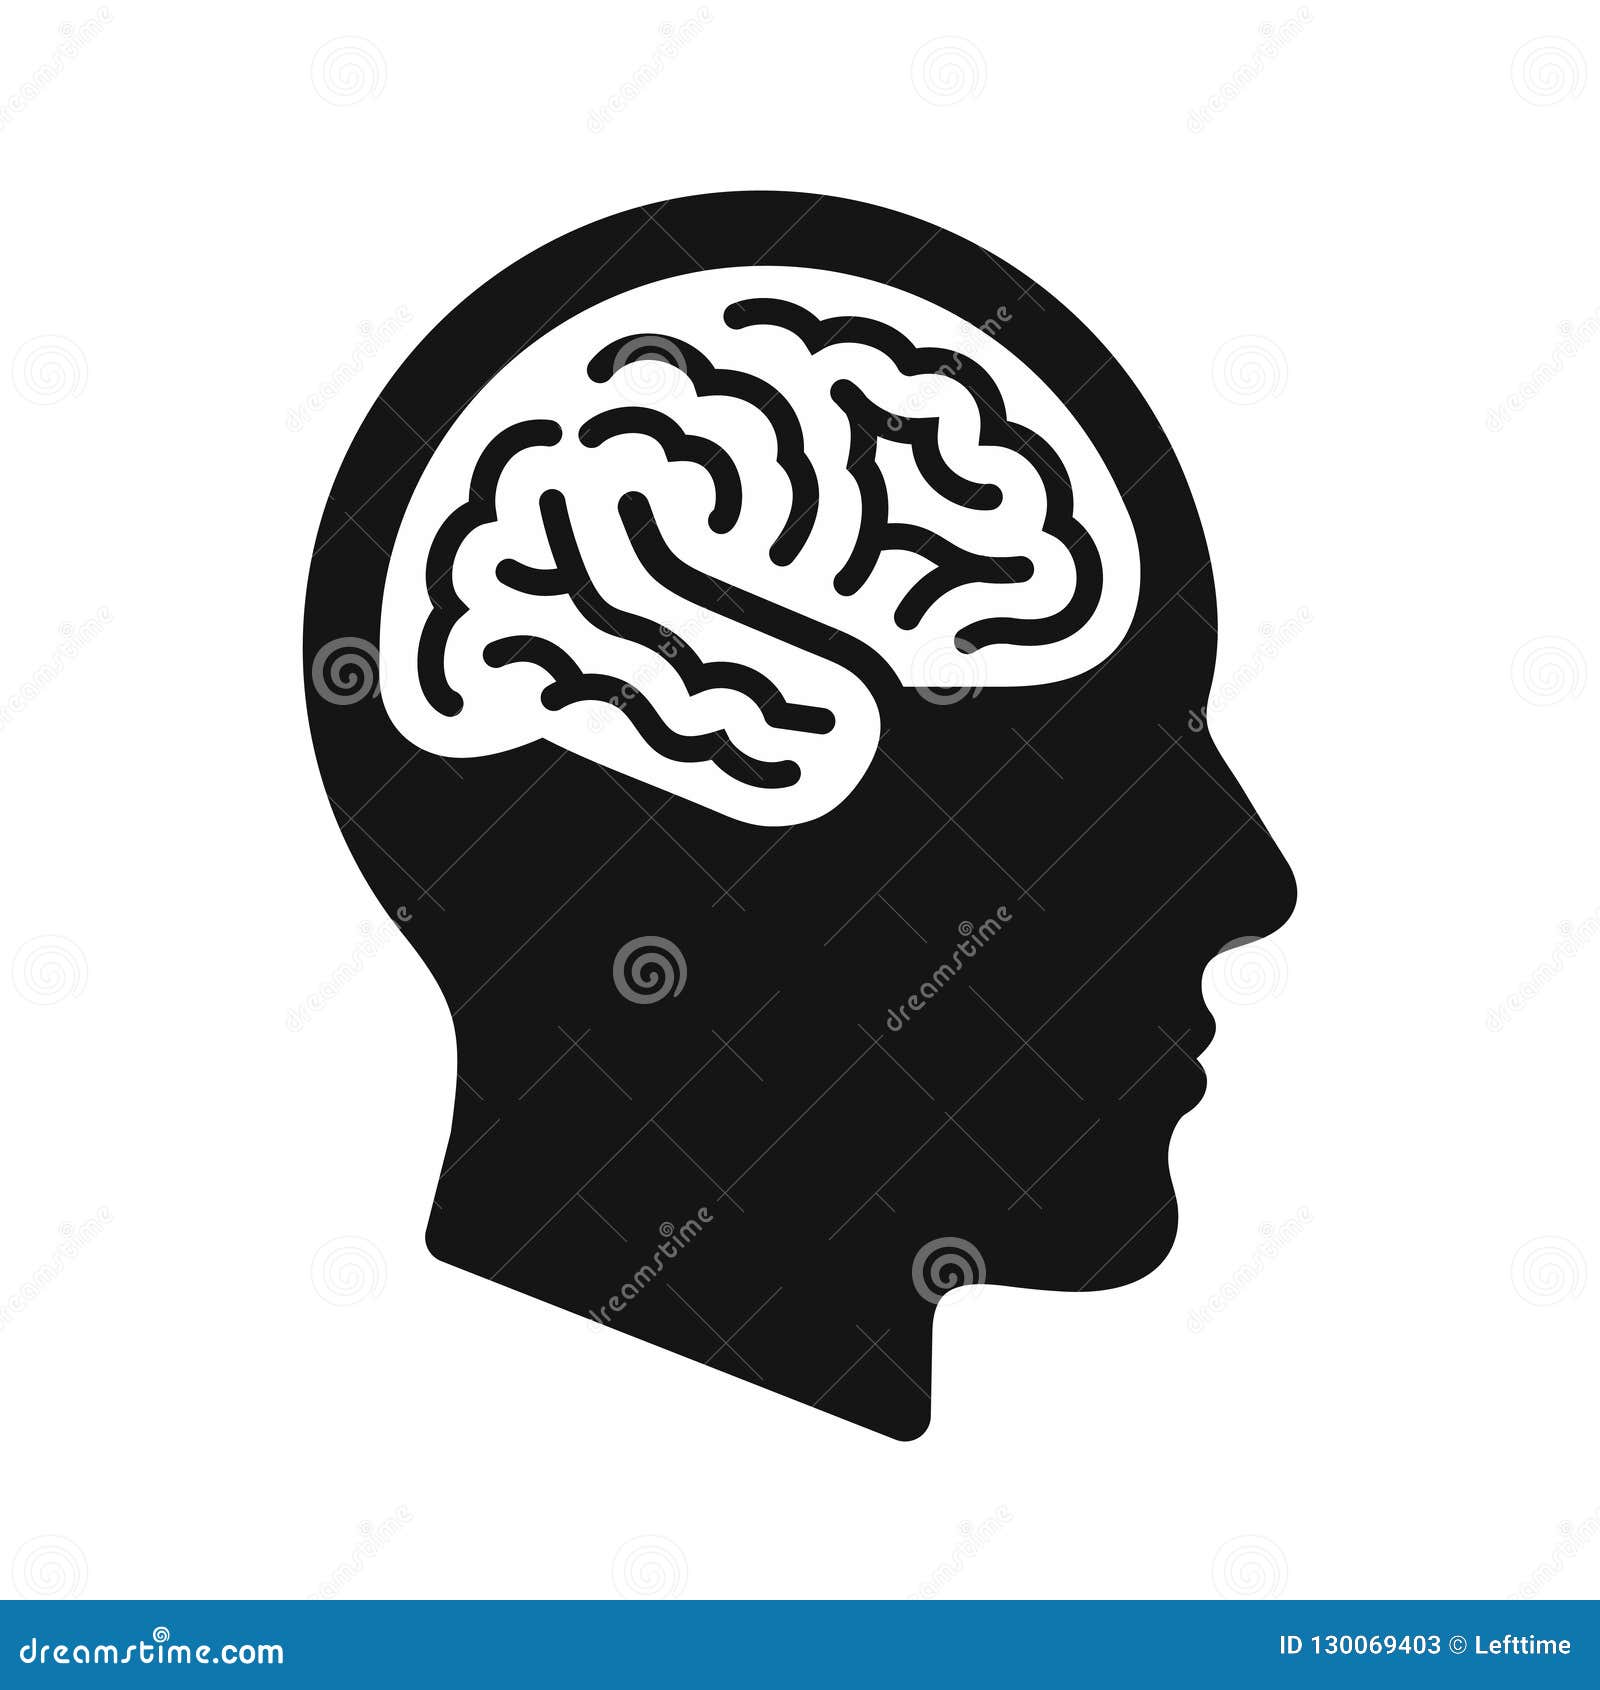 Menschliches Hauptprofil mit Gehirnsymbol, schwarze Ikonenvektorillustration. Profil des menschlichen Kopfes mit Gehirnsymbol, einfache schwarze Ikone, Vektorillustration lokalisiert auf weißem Hintergrund